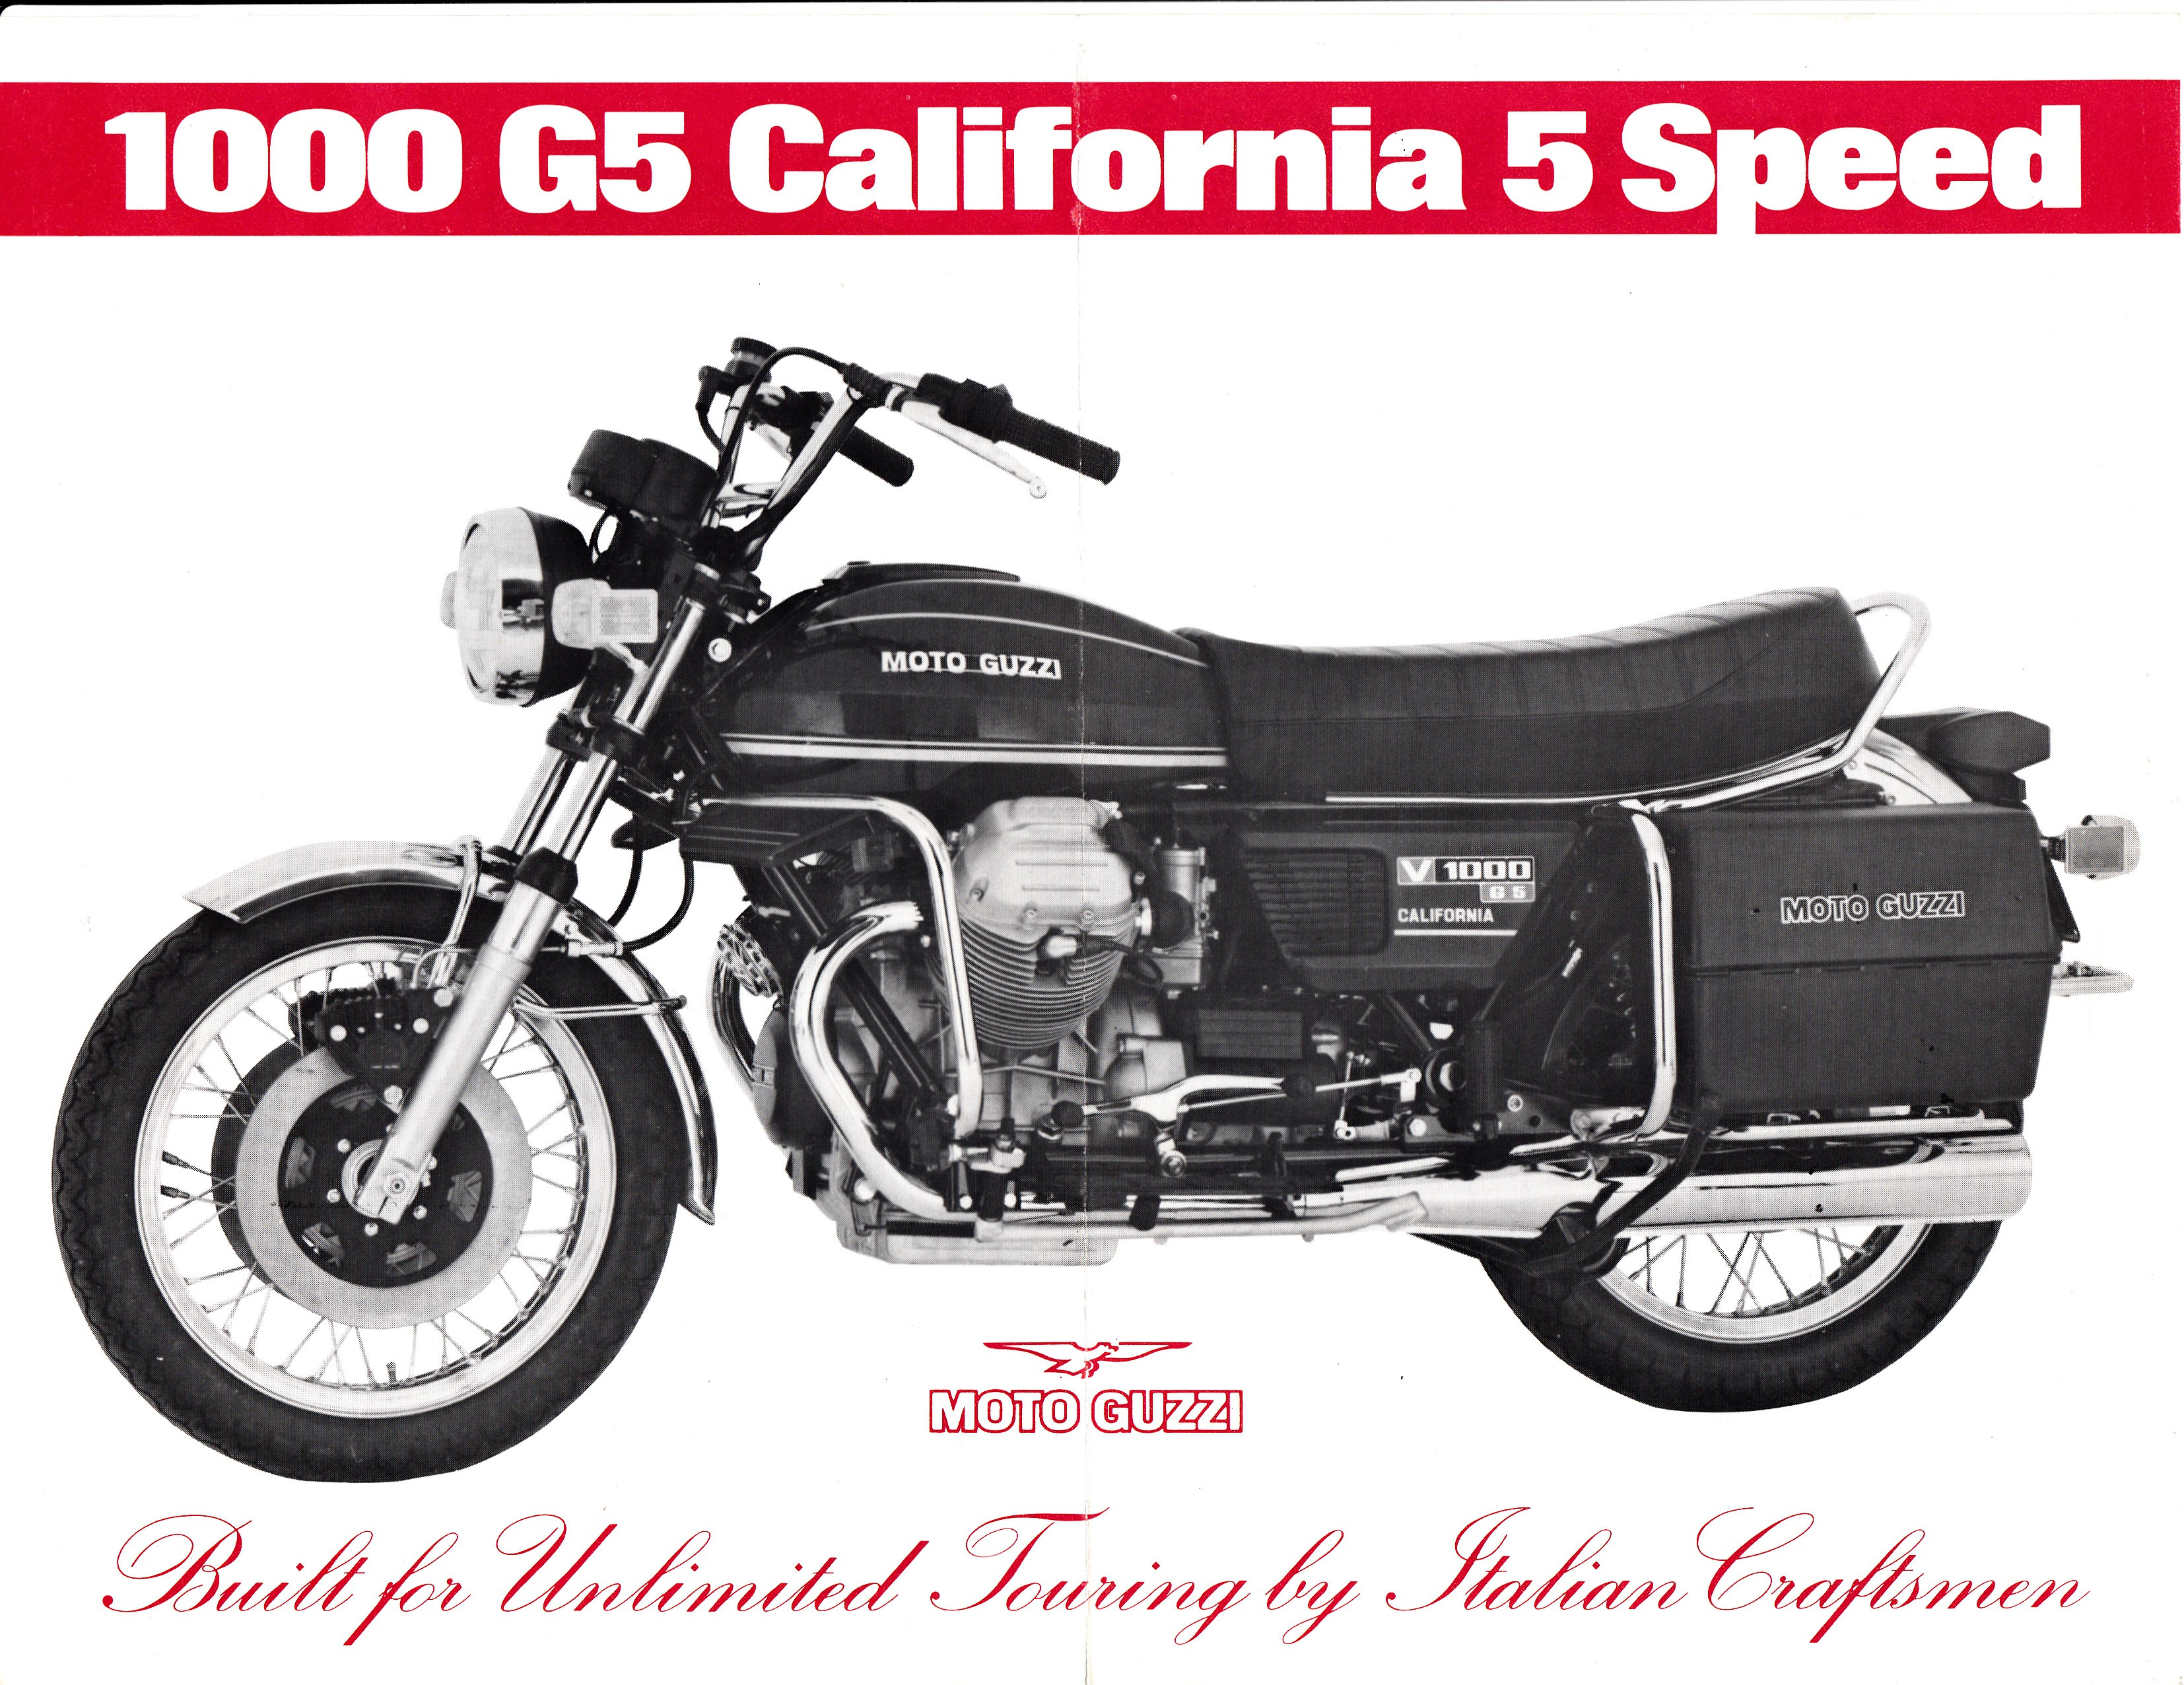 Brochure - Moto Guzzi V1000 G5 California